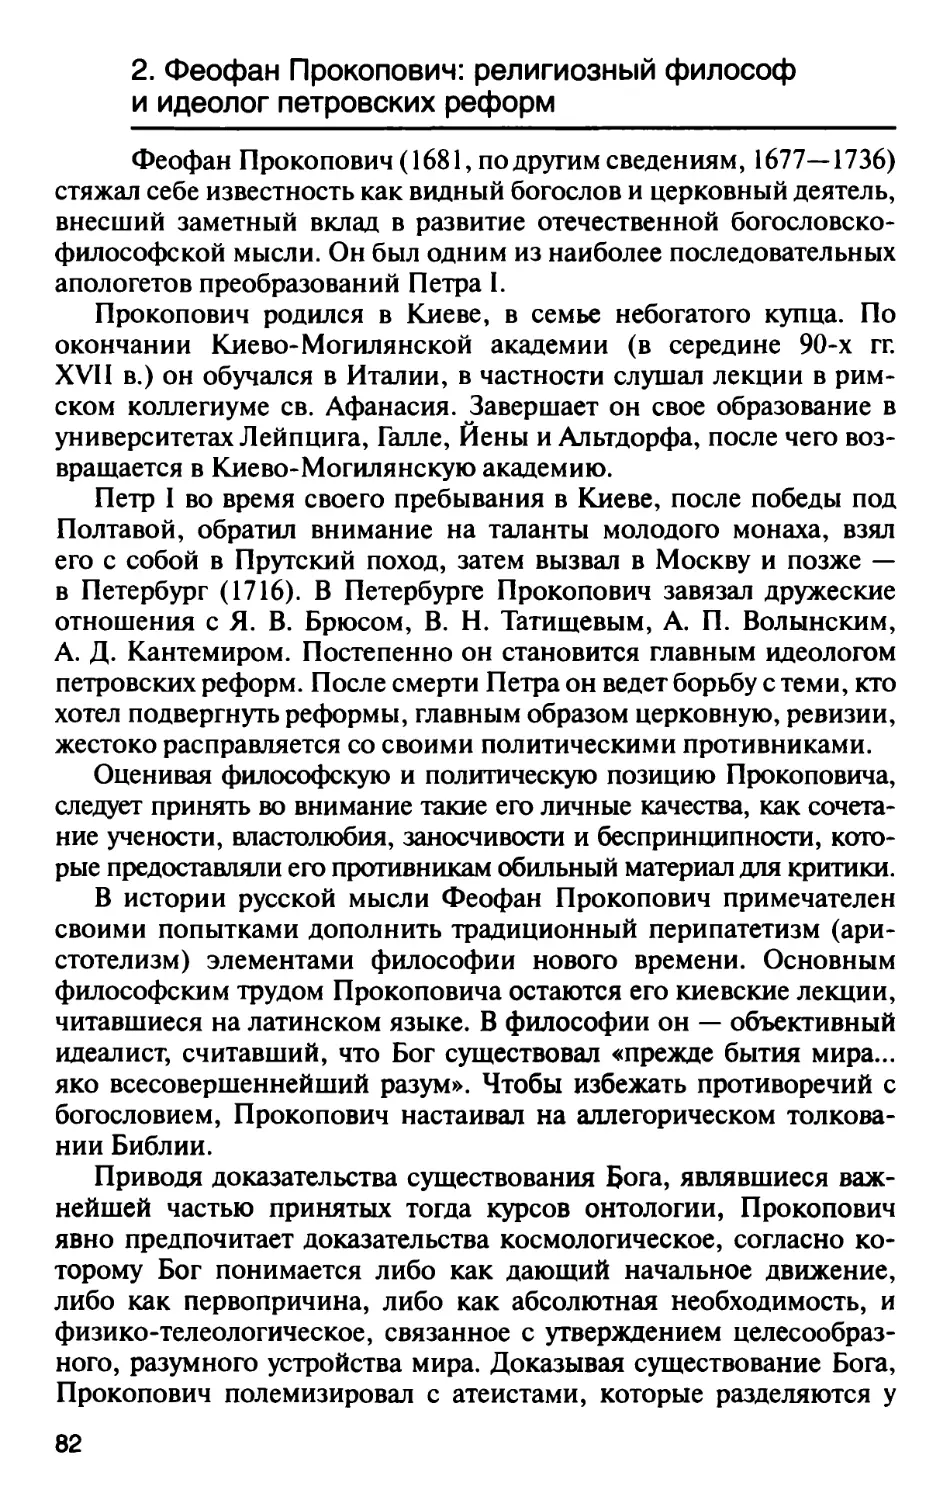 2. Феофан Прокопович: религиозный философ и идеолог петровских реформ